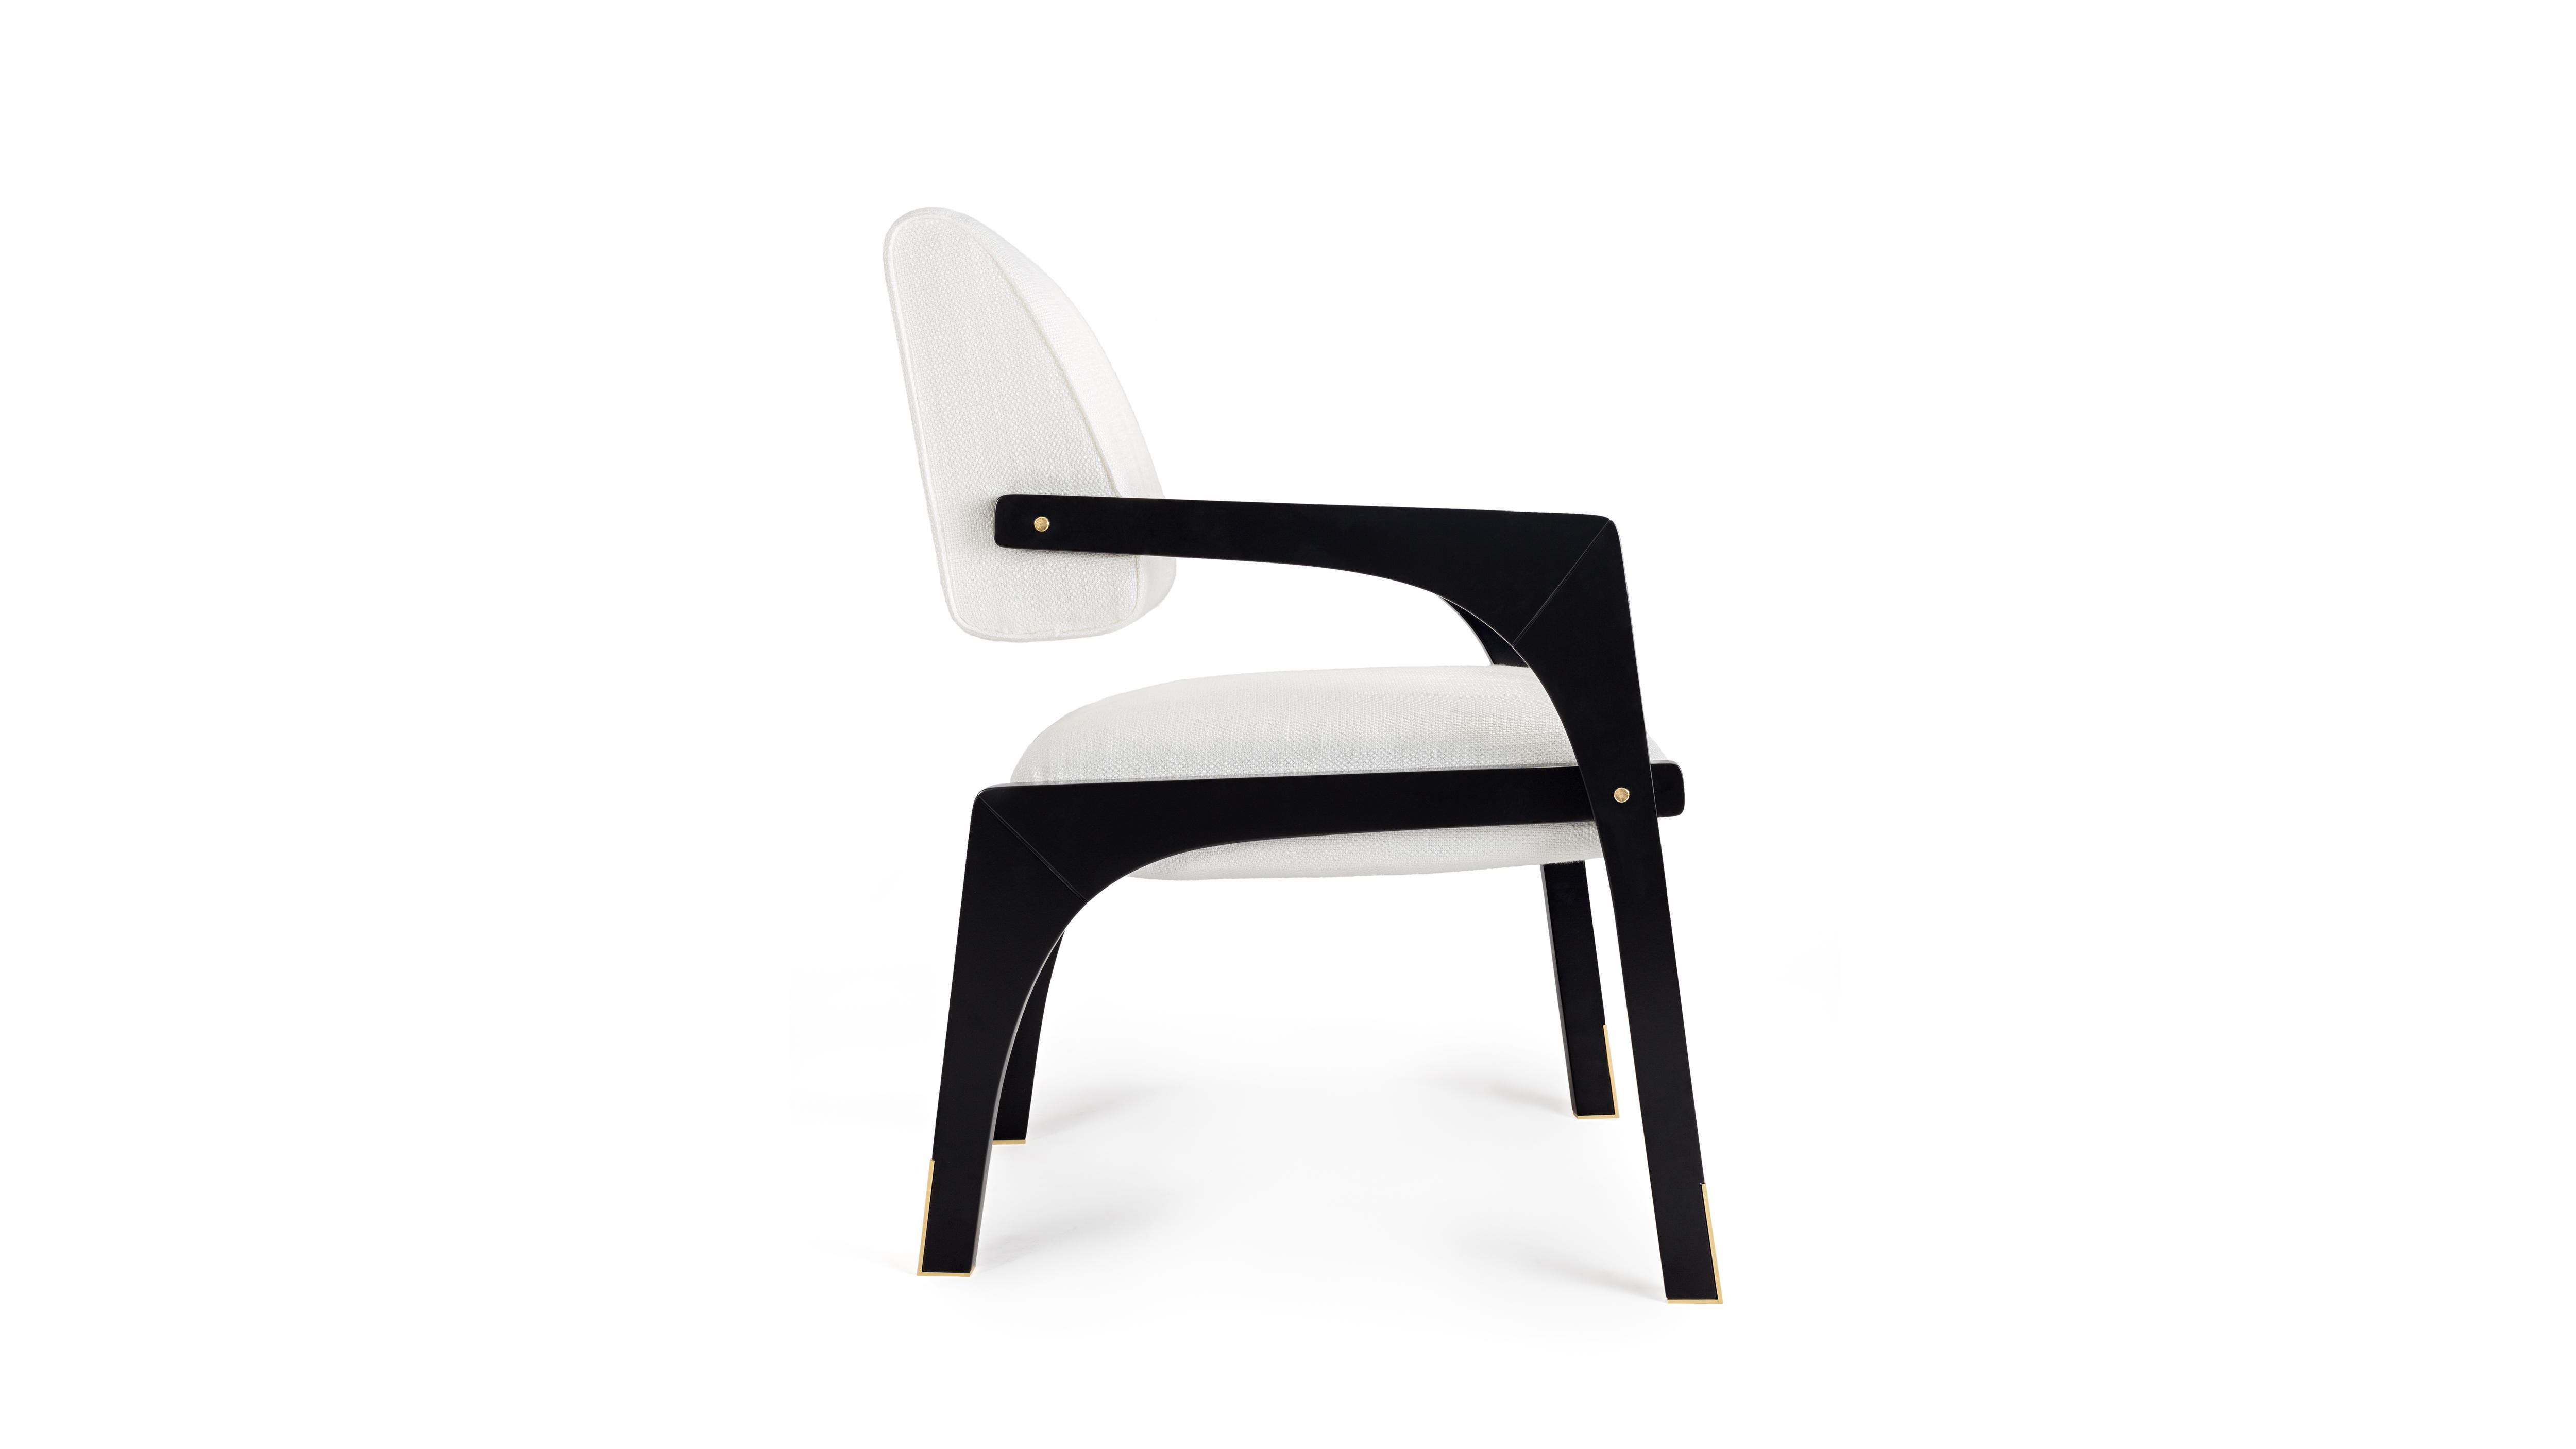 Meilleure conception de chaise aux International Design & Architecture Awards 2021
Mention honorable aux European Product Design Awards 2021

La chaise de salle à manger Arches est conçue à l'image de l'échelle architecturale qui suggère une